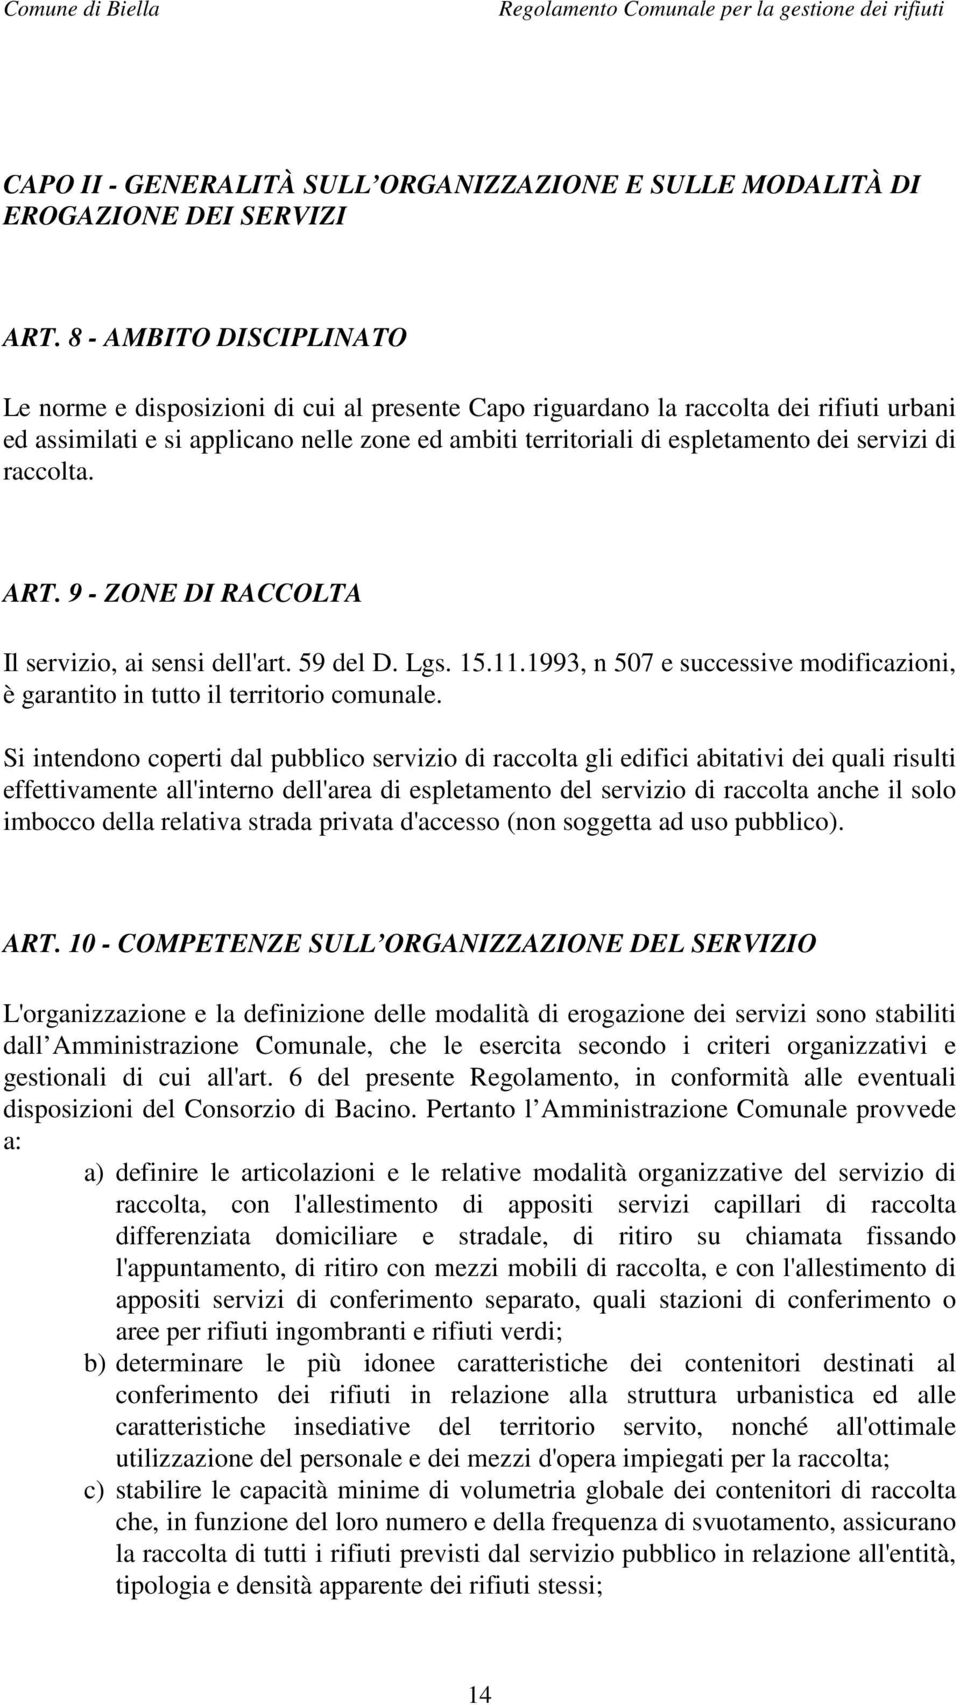 servizi di raccolta. ART. 9 - ZONE DI RACCOLTA Il servizio, ai sensi dell'art. 59 del D. Lgs. 15.11.1993, n 507 e successive modificazioni, è garantito in tutto il territorio comunale.